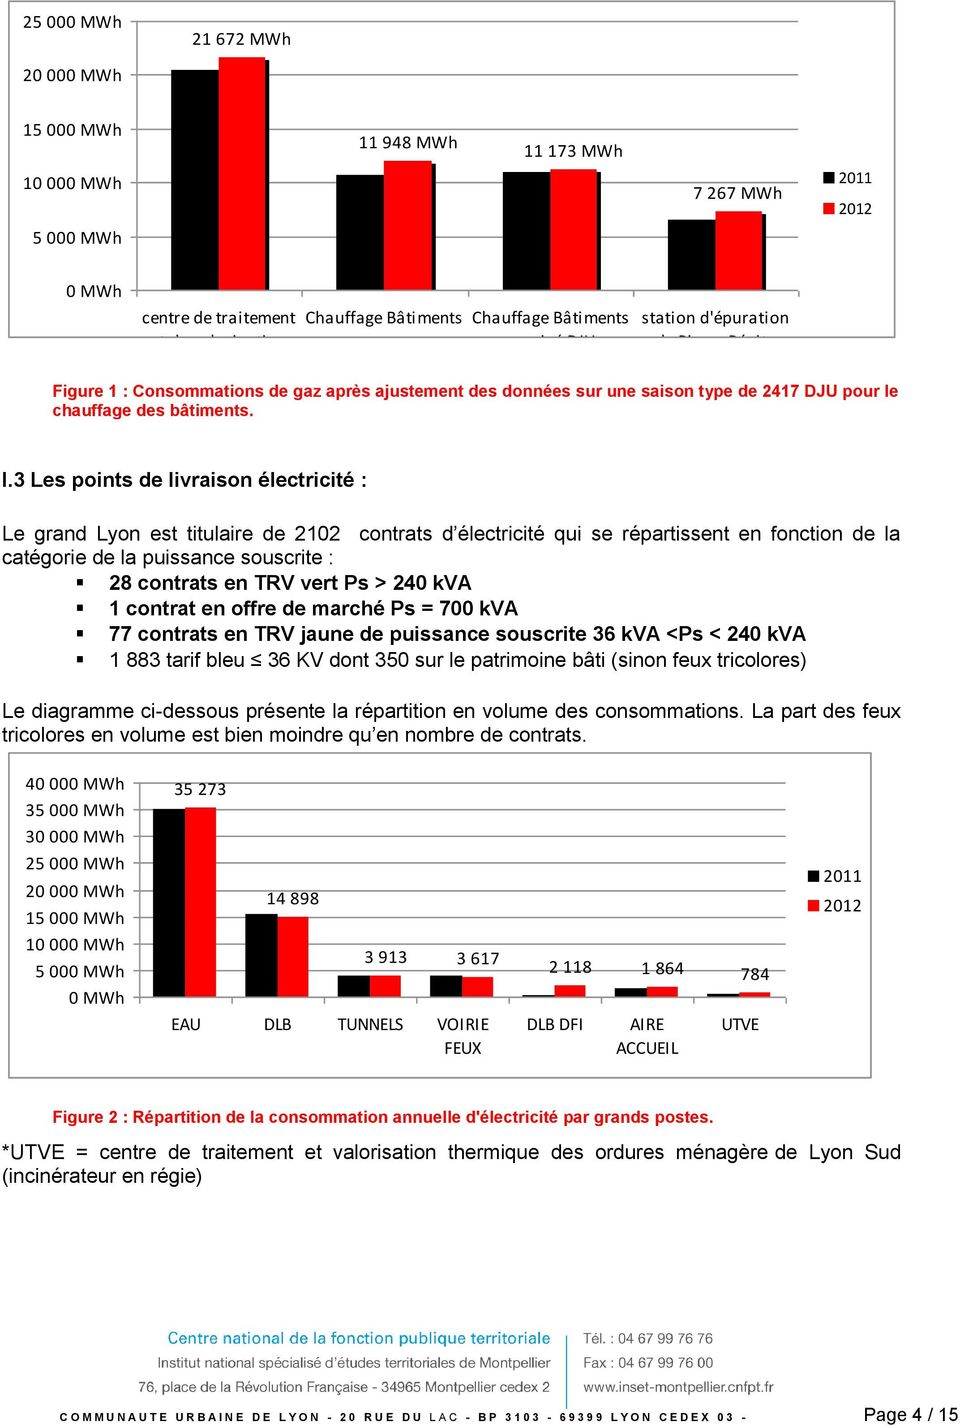 3 Les points de livraison électricité : Le grand Lyon est titulaire de 2102 contrats d électricité qui se répartissent en fonction de la catégorie de la puissance souscrite : 28 contrats en TRV vert